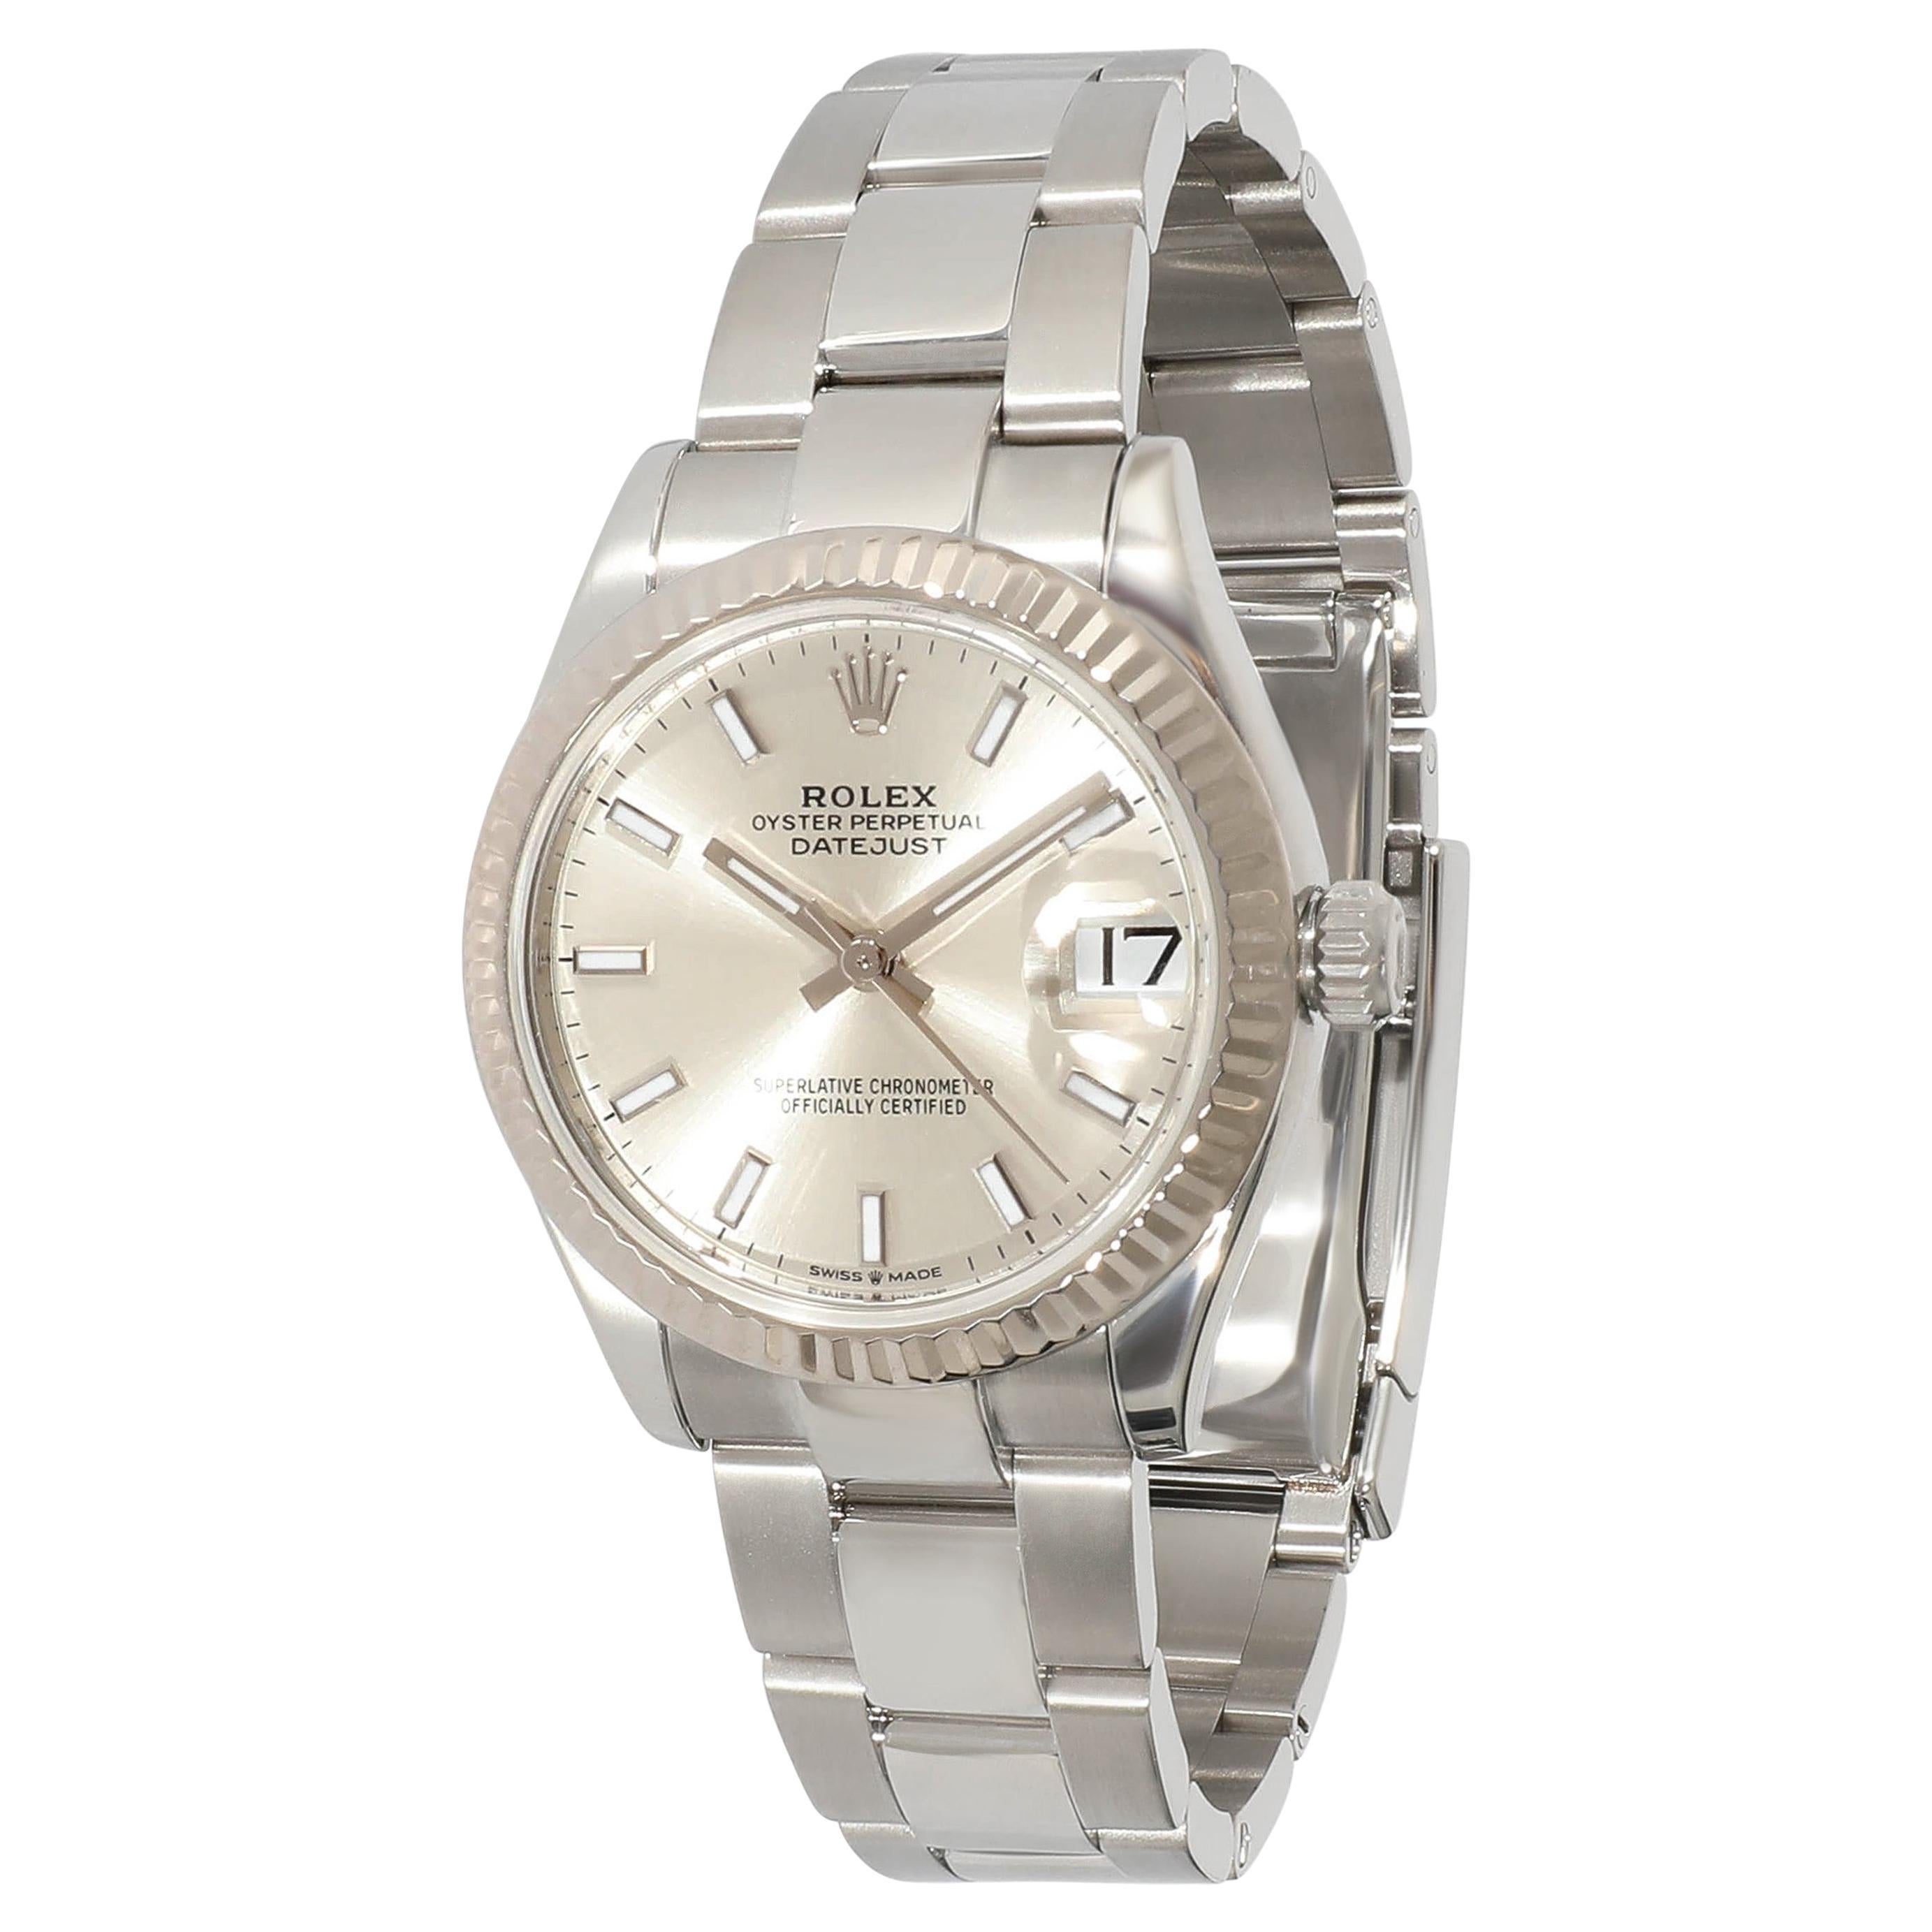 Rolex Datejust 278274 Unisex Watch in 18kt Stainless Steel/White Gold